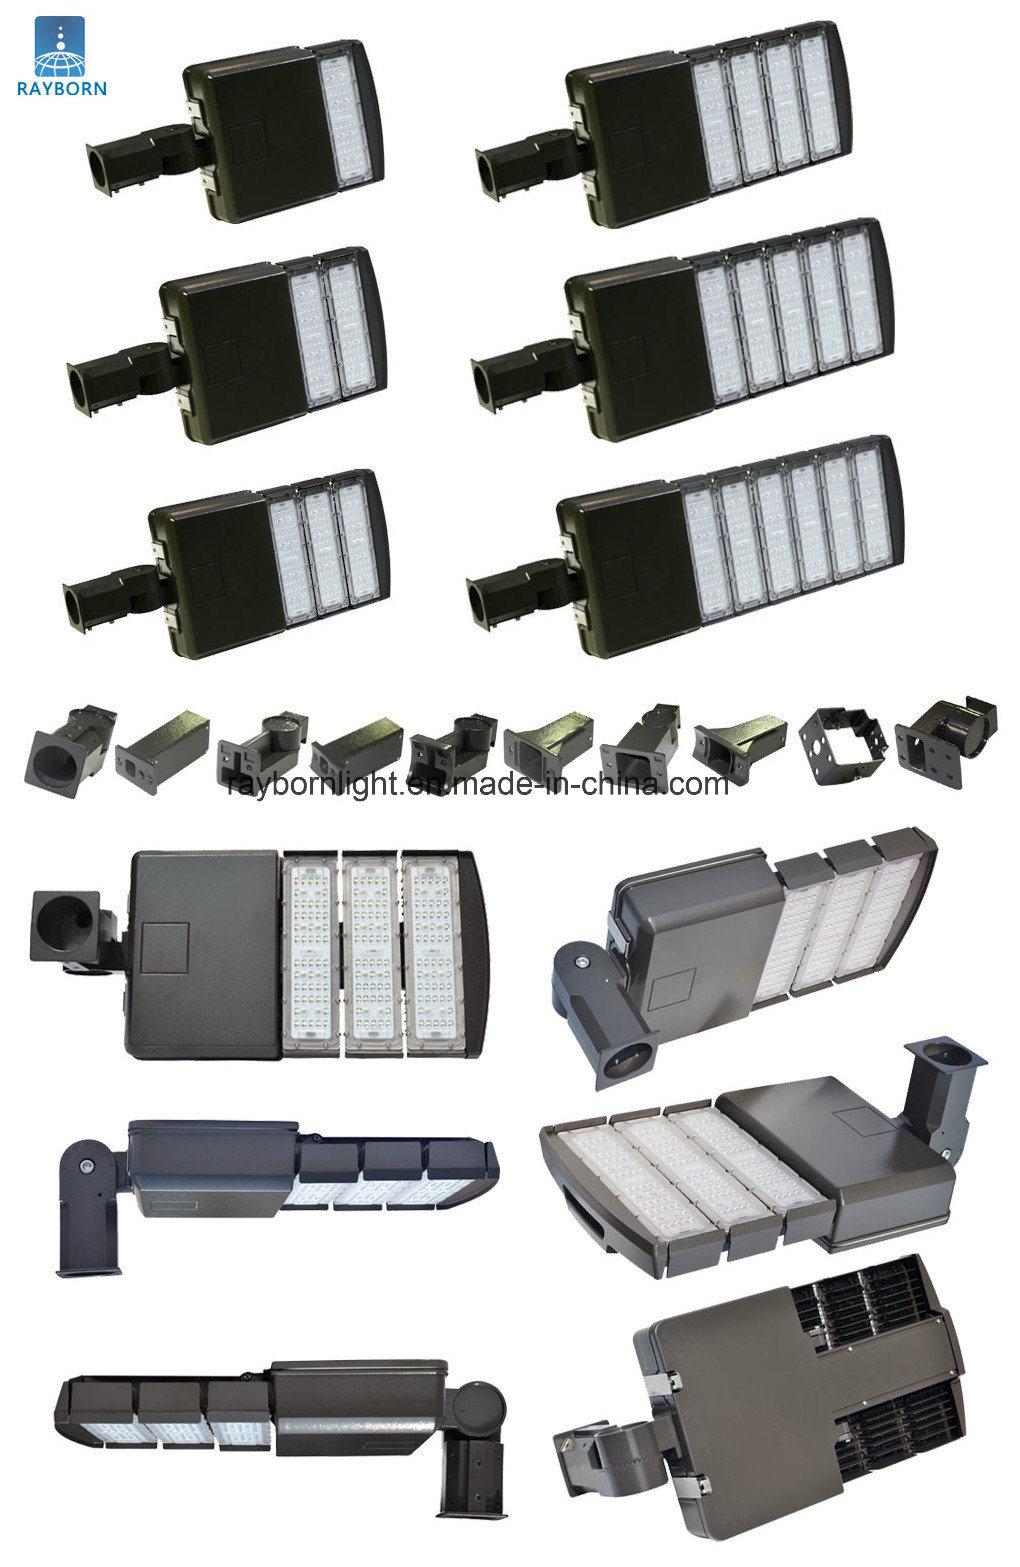 Photocell Sensor 250W/100W/150W/200W Public Area Shoebox LED Street Light for Outdoor Parking Lot Roadway Lighting